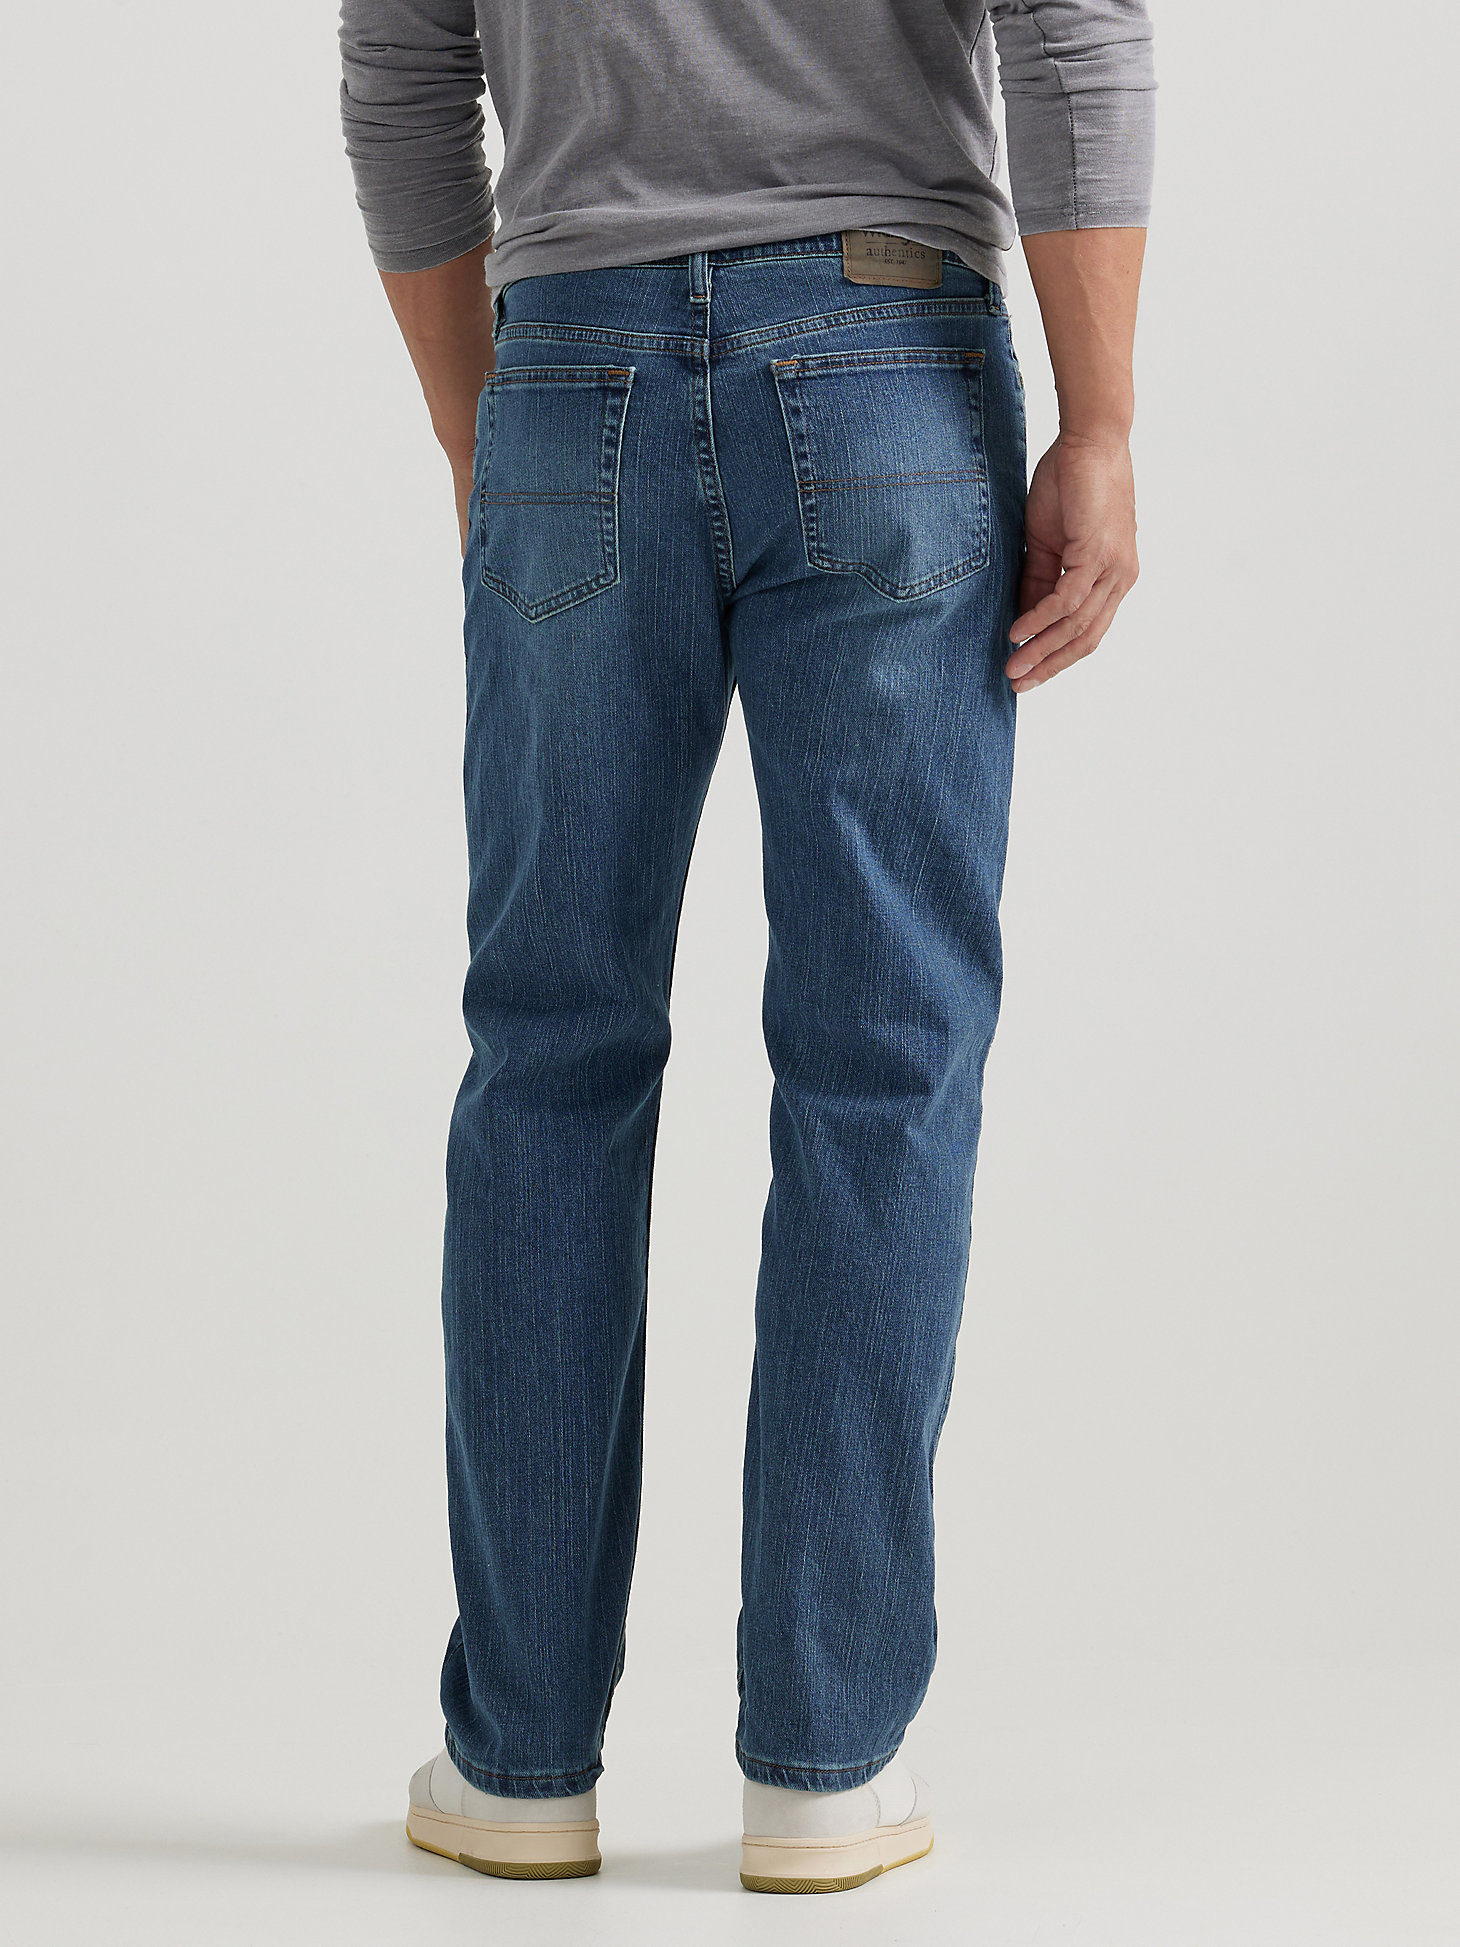 Men's Wrangler Authentics® Regular Fit Comfort Waist Jean in Blue Ocean alternative view 1